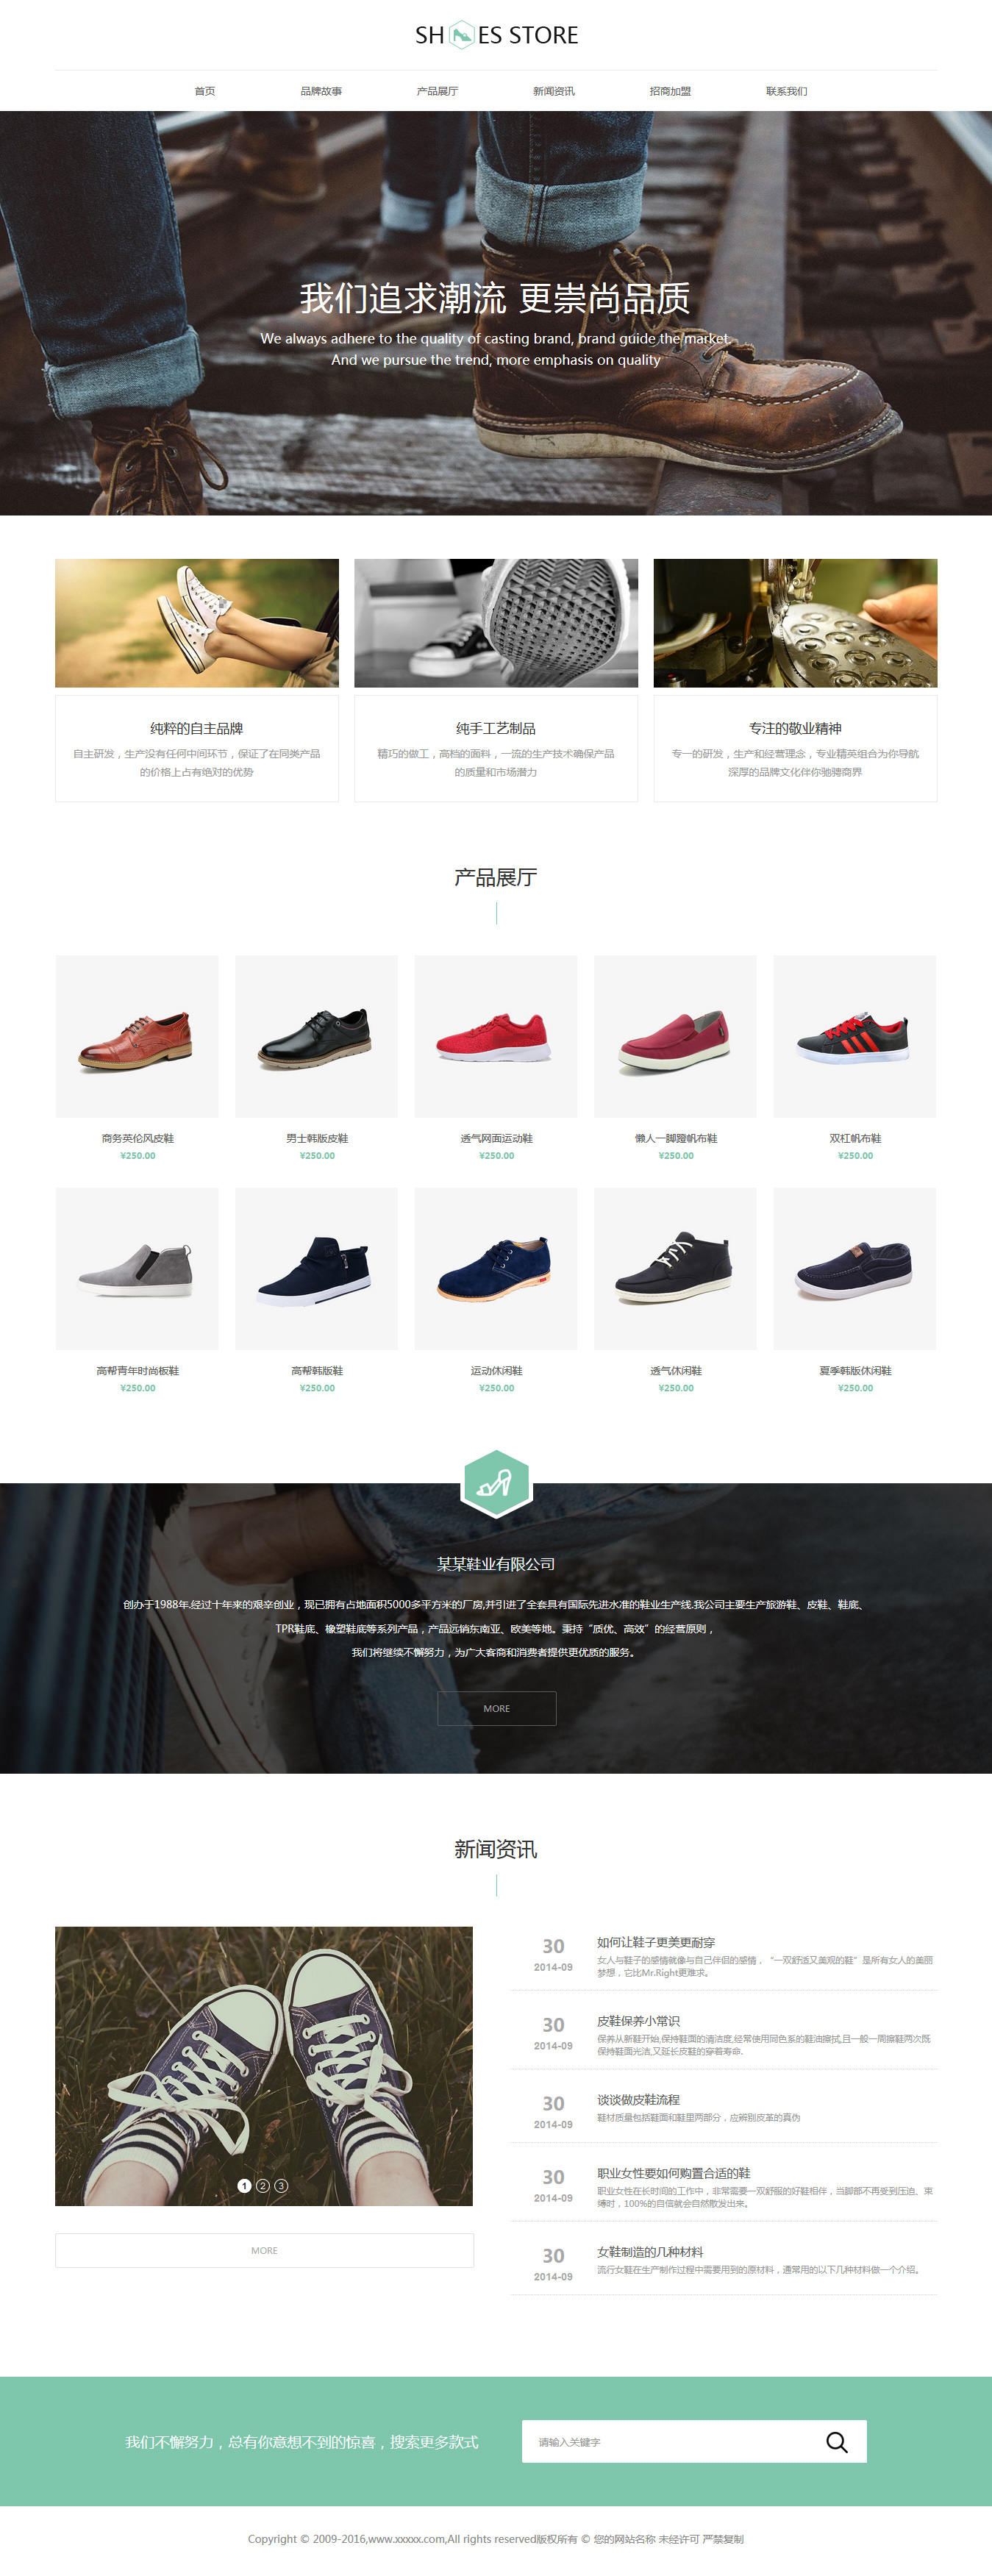 企业网站精美模板-shoes-1098926